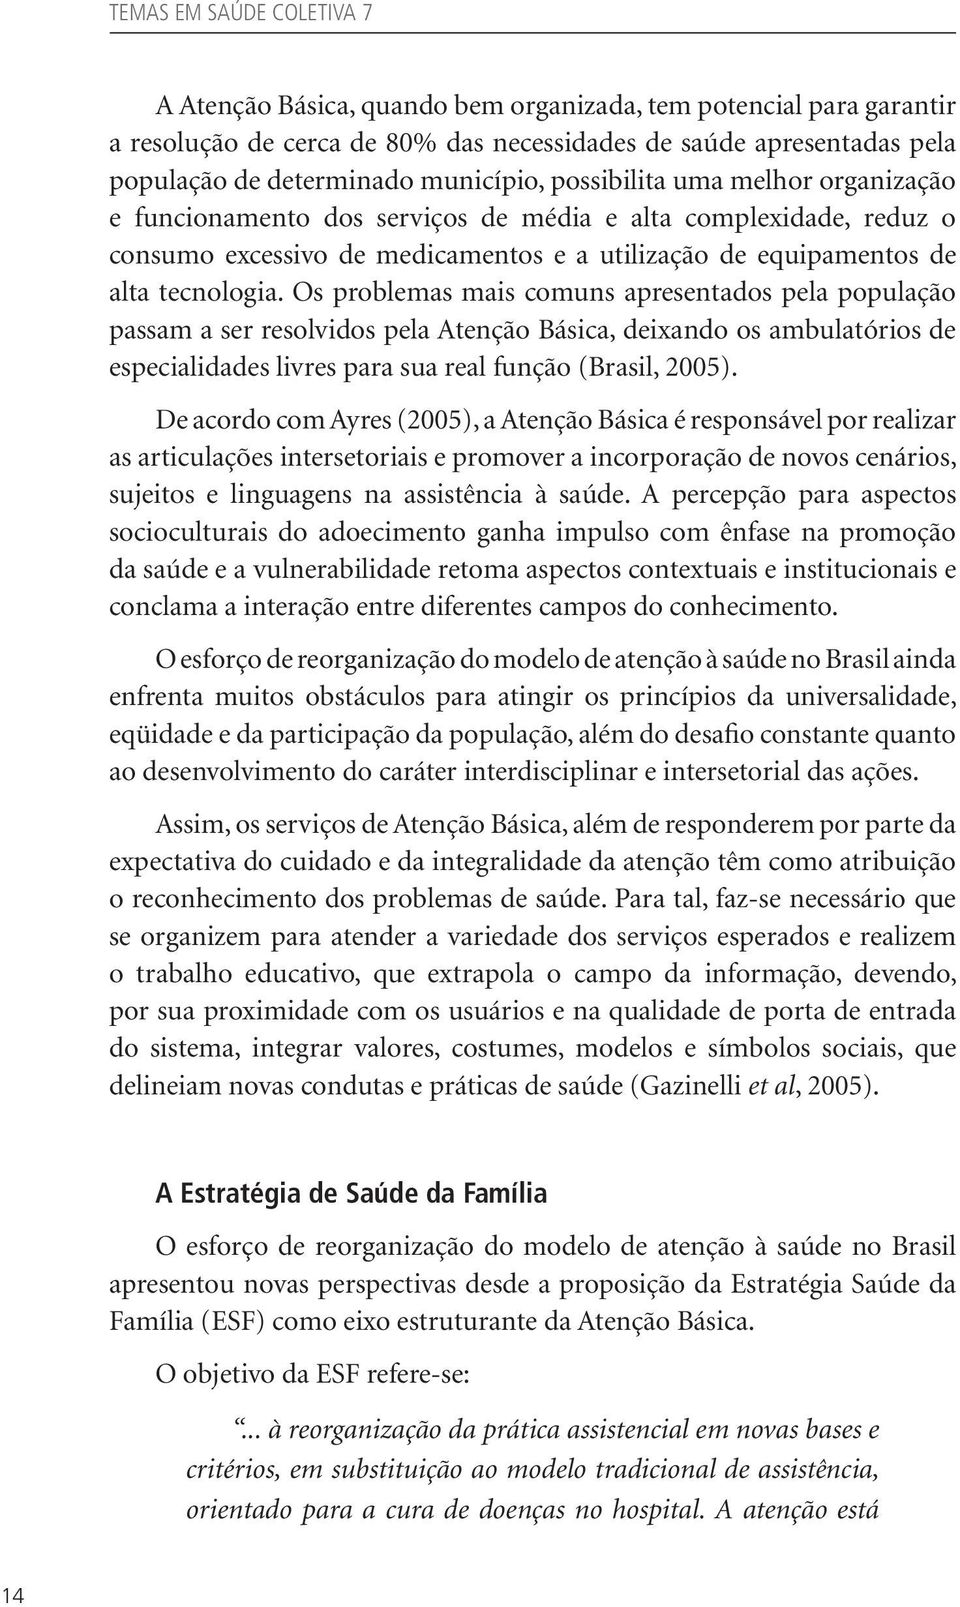 Os problemas mais comuns apresentados pela população passam a ser resolvidos pela Atenção Básica, deixando os ambulatórios de especialidades livres para sua real função (Brasil, 2005).